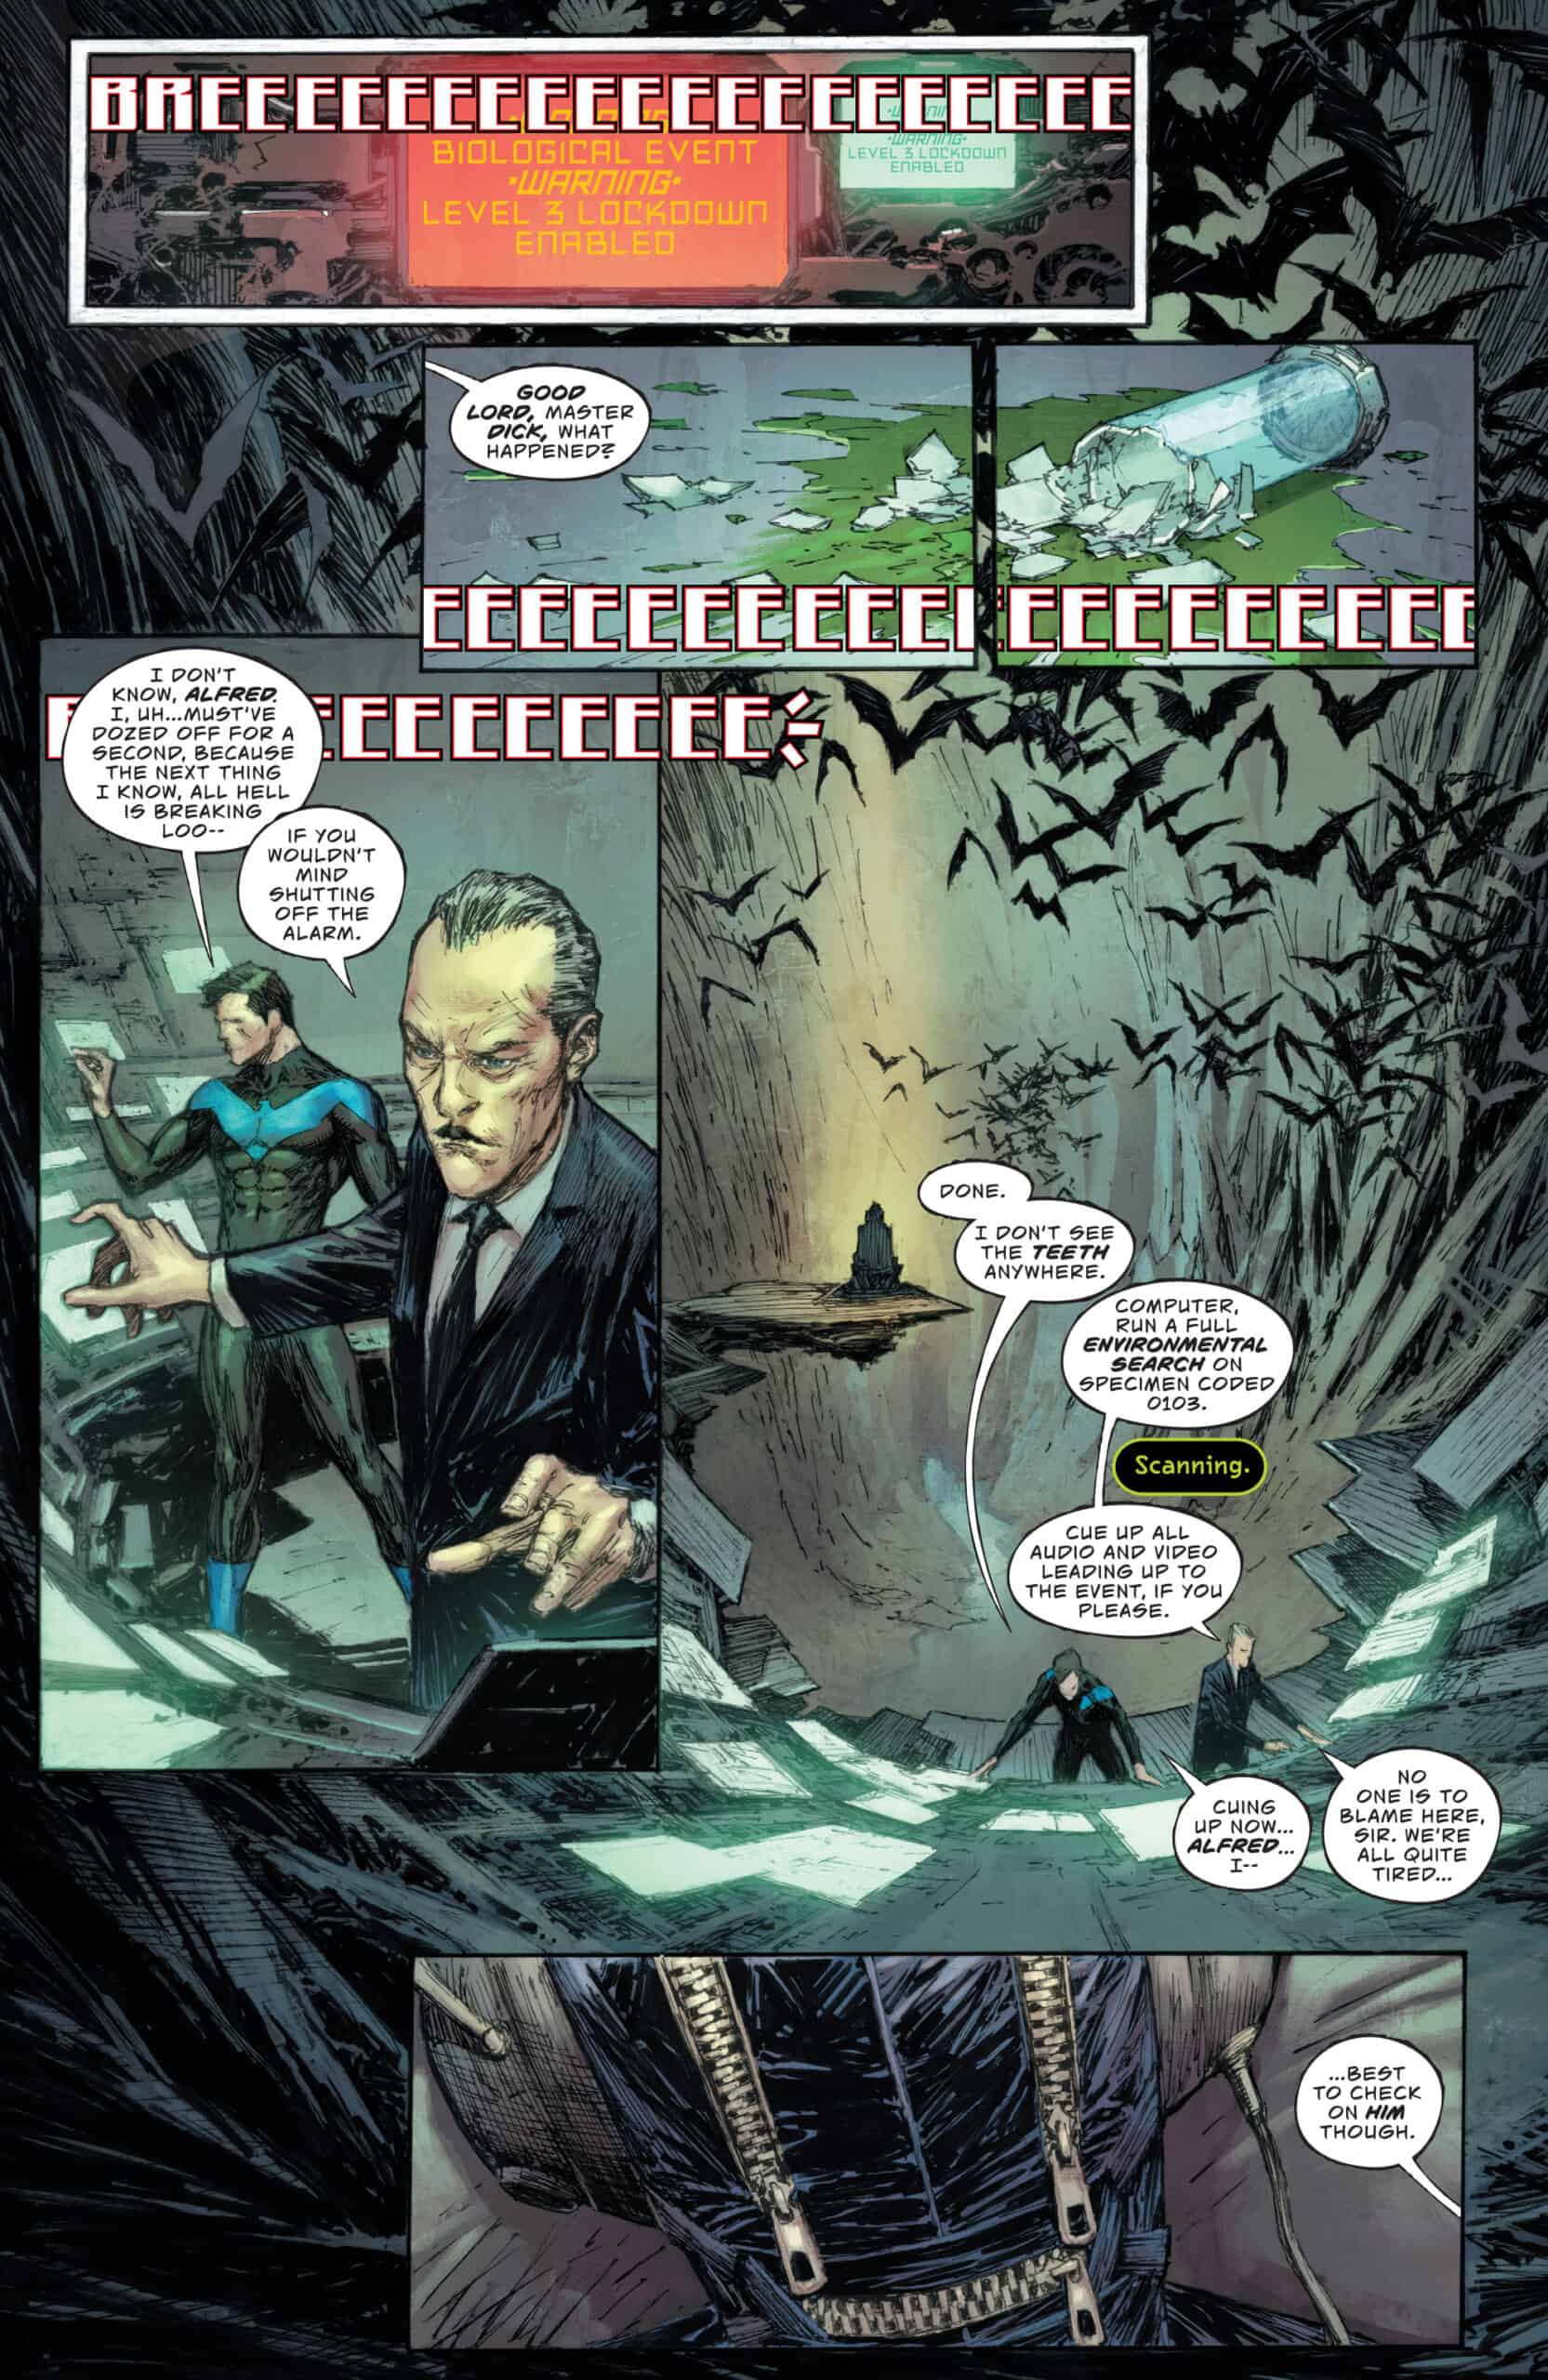 Batman & The Joker: The Deadly Duo #3: A Team Effort - Comic Watch